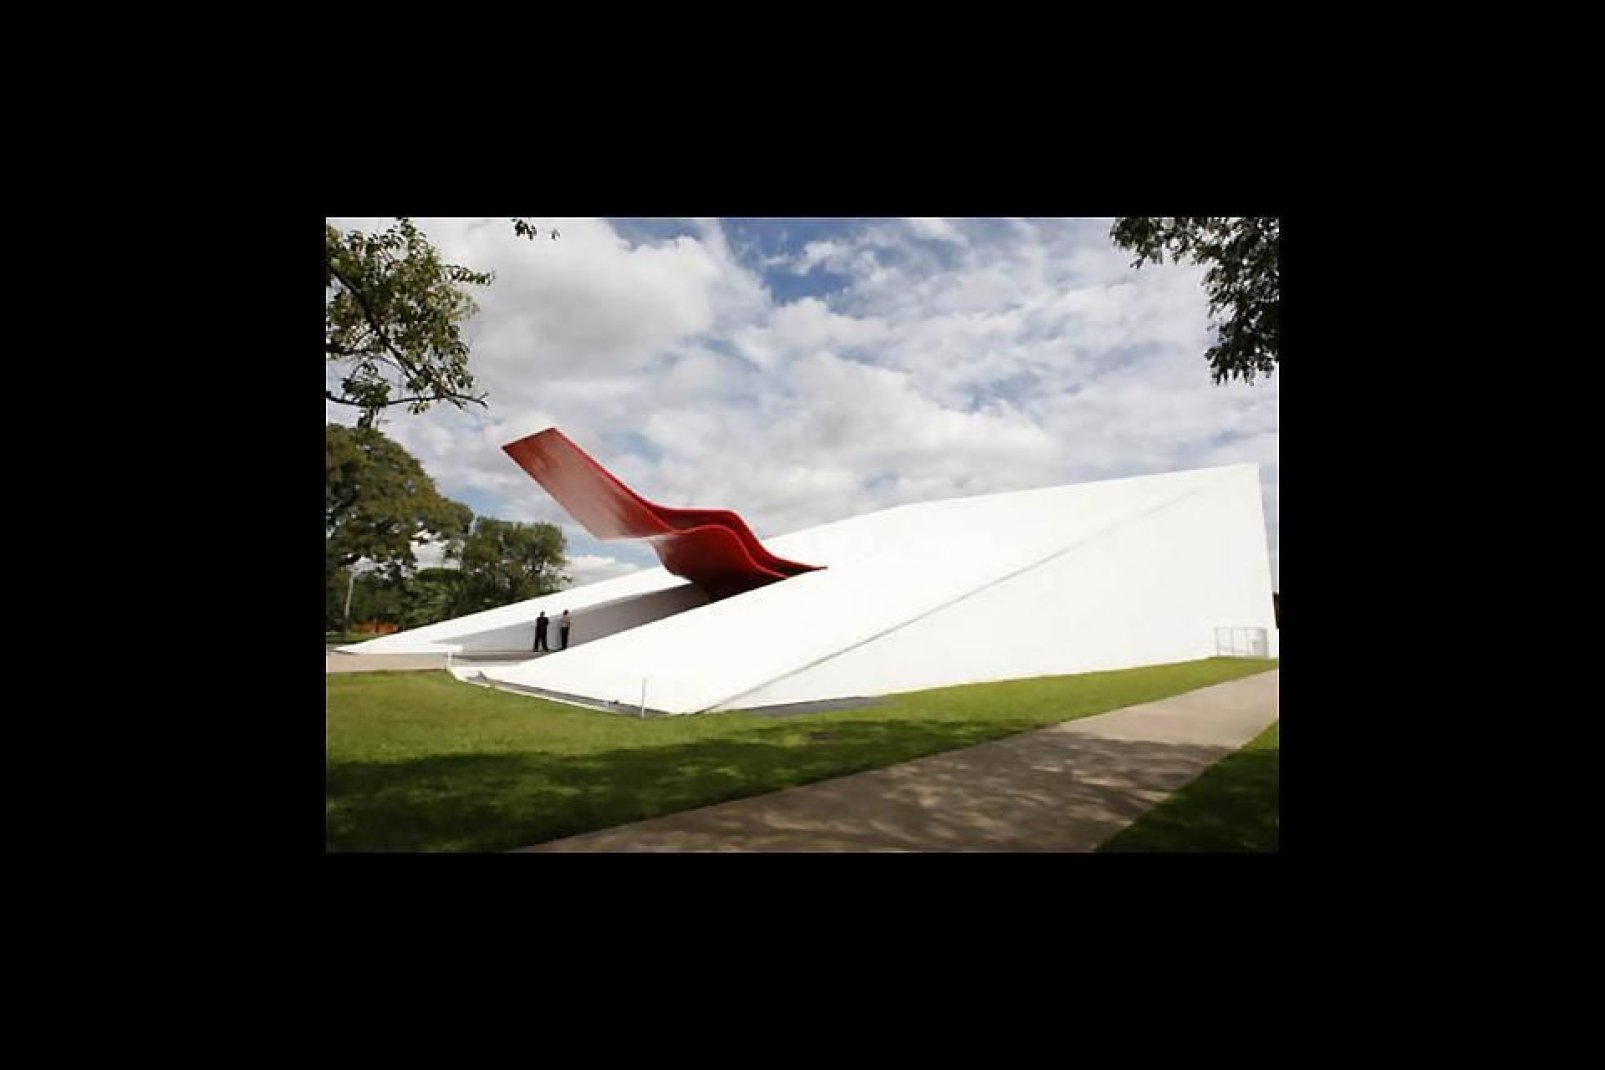 El último proyecto de Niemeyer en los terrenos del parque se inauguró en octubre de 2005. Dispone de 800 plazas y un espacio modular que puede acoger hasta 15 000 personas.